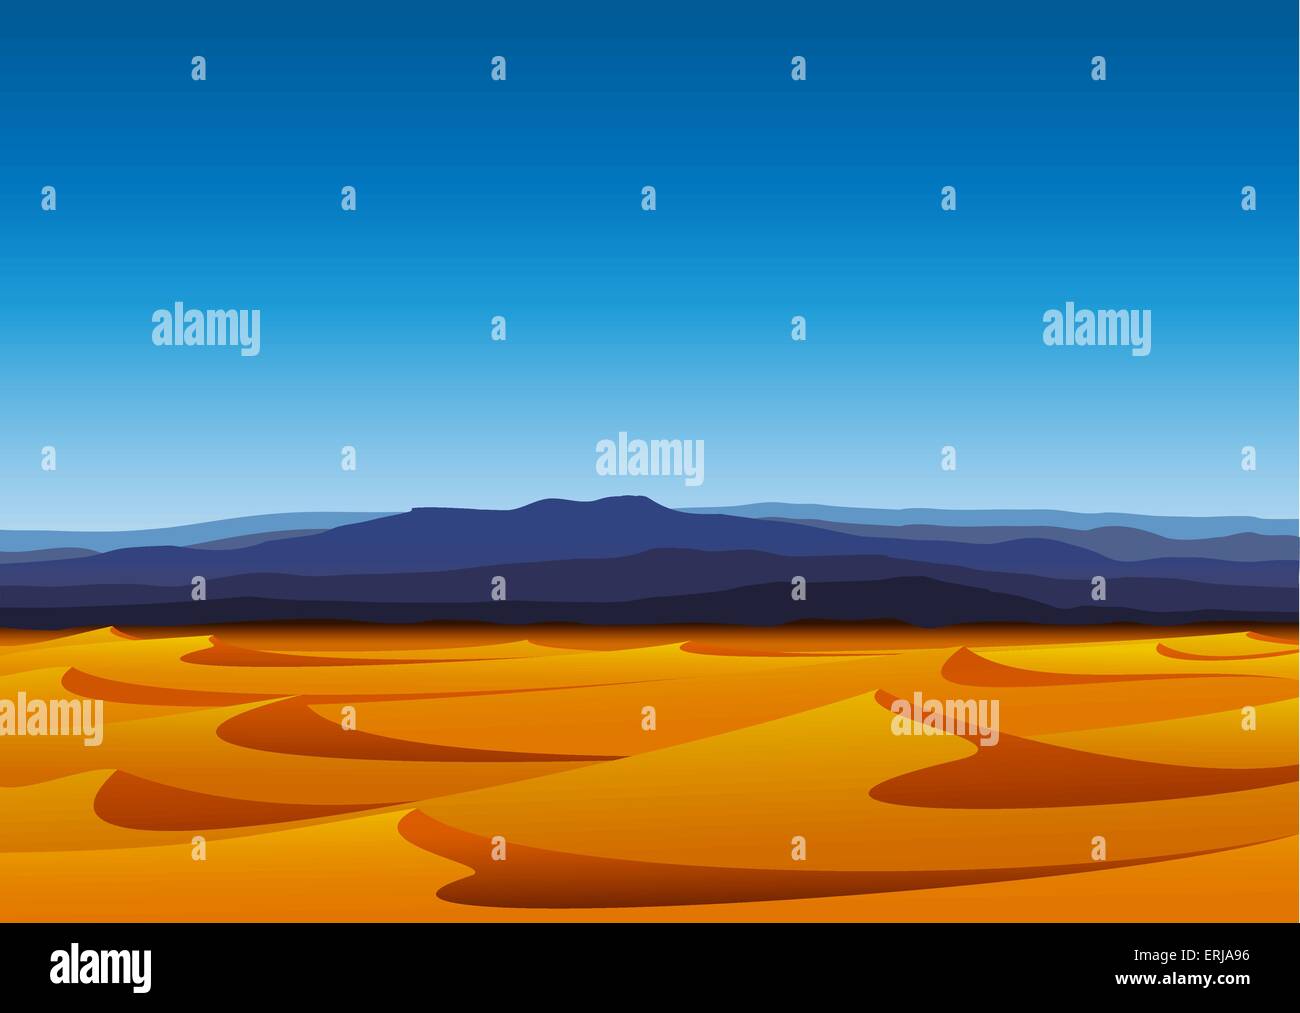 Chaude journée de désert aride avec des dunes de sable jaune et bleu montagne Illustration de Vecteur